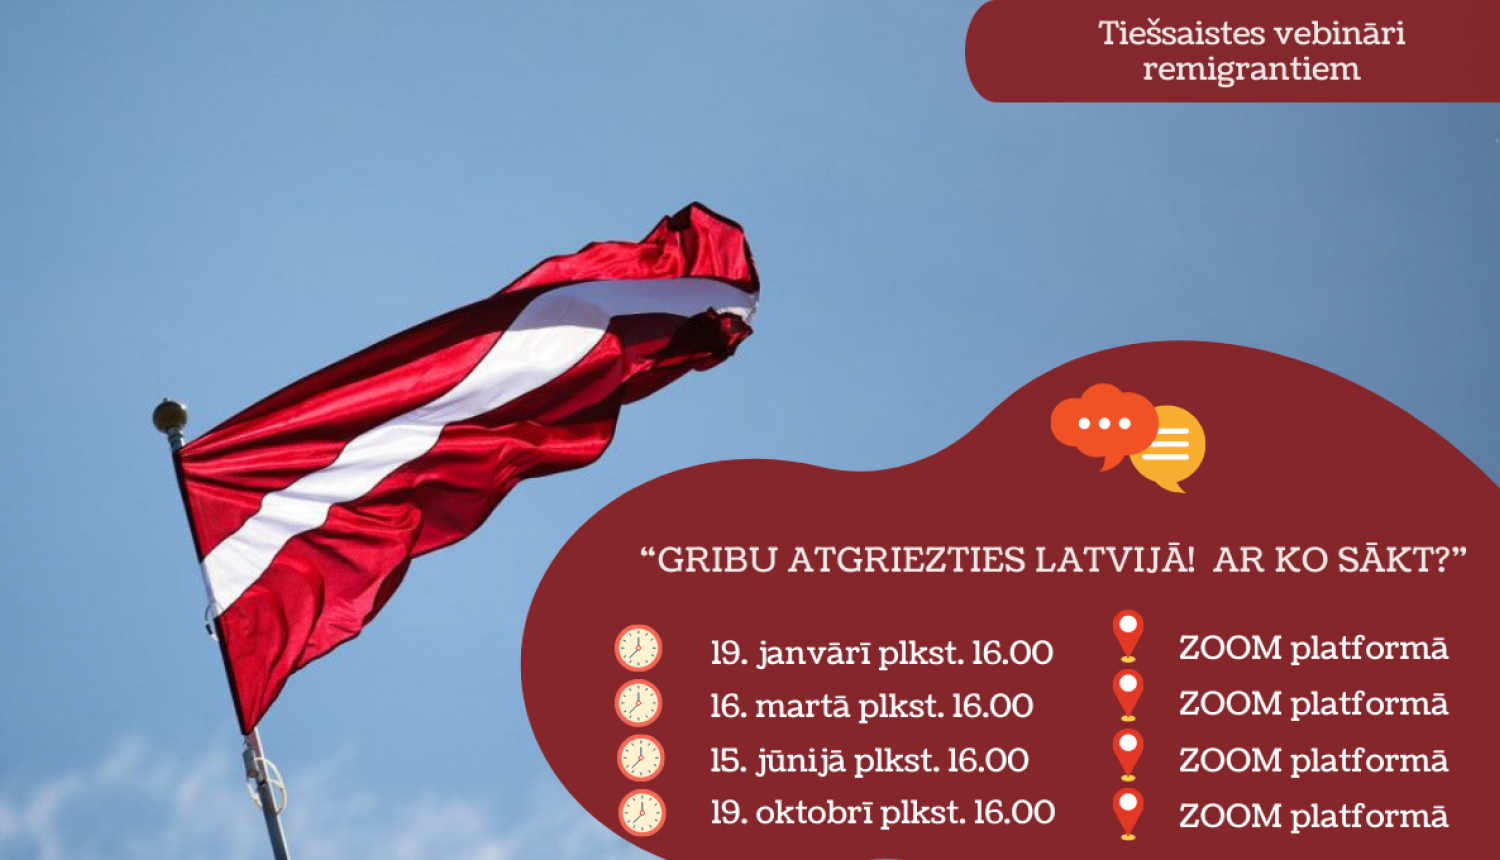 Latvijas karogs un vebināru norises datumi